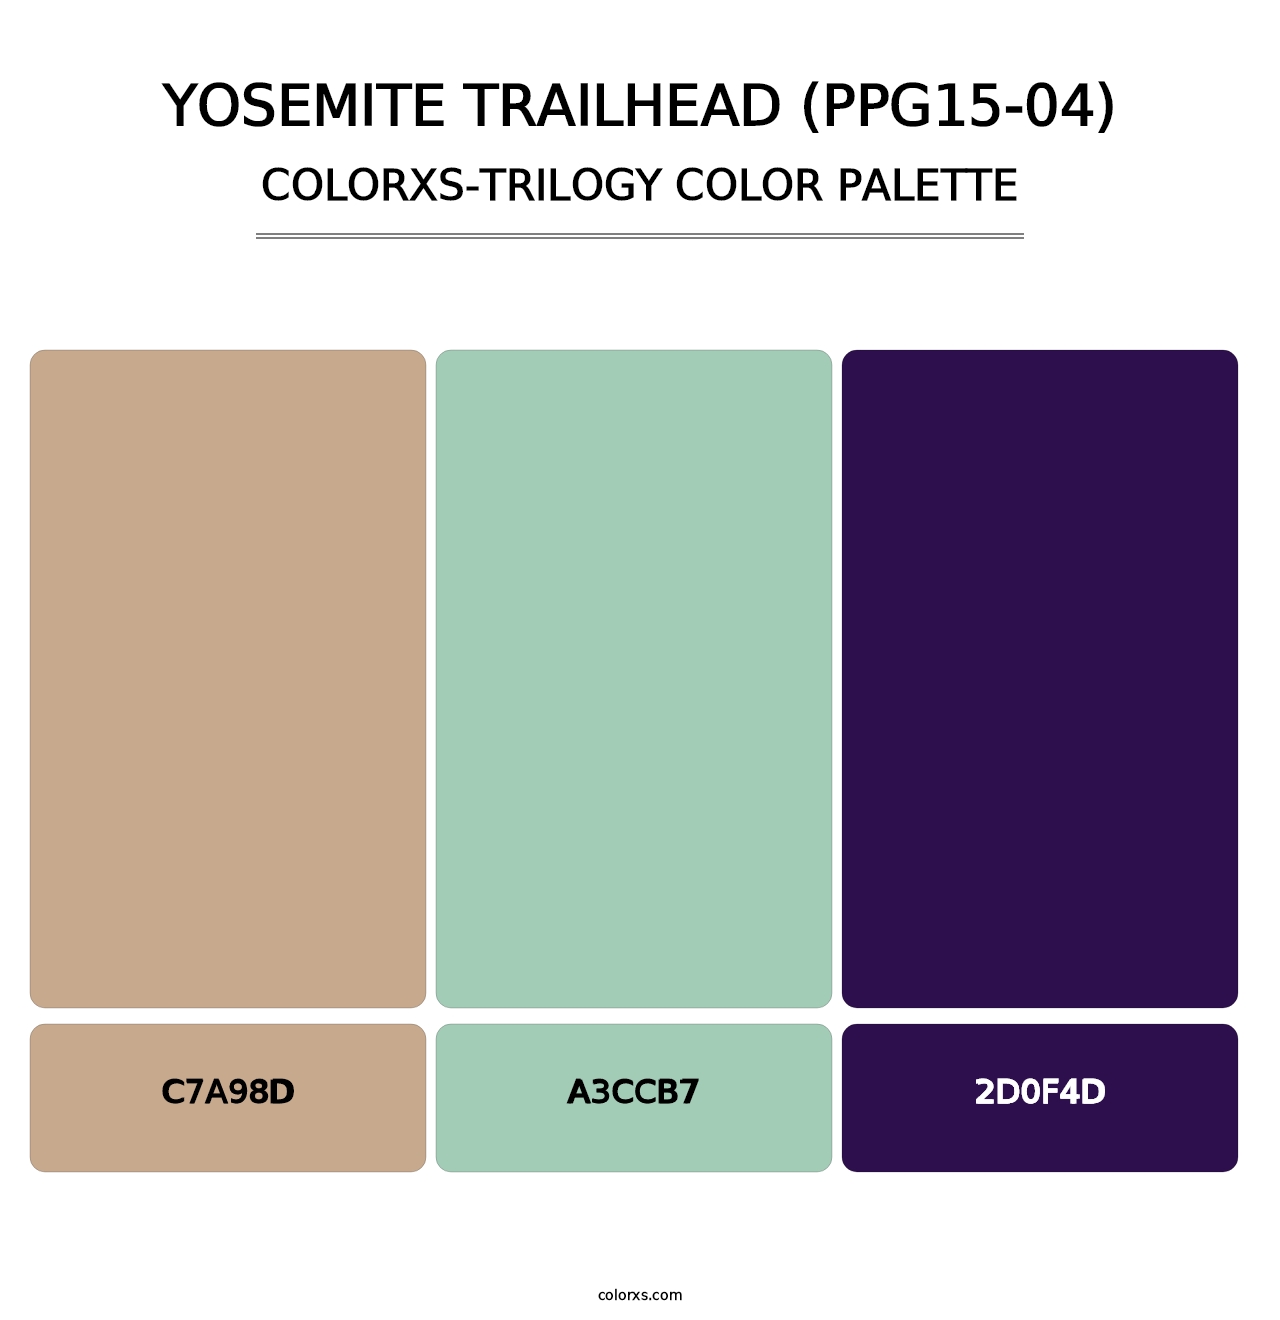 Yosemite Trailhead (PPG15-04) - Colorxs Trilogy Palette